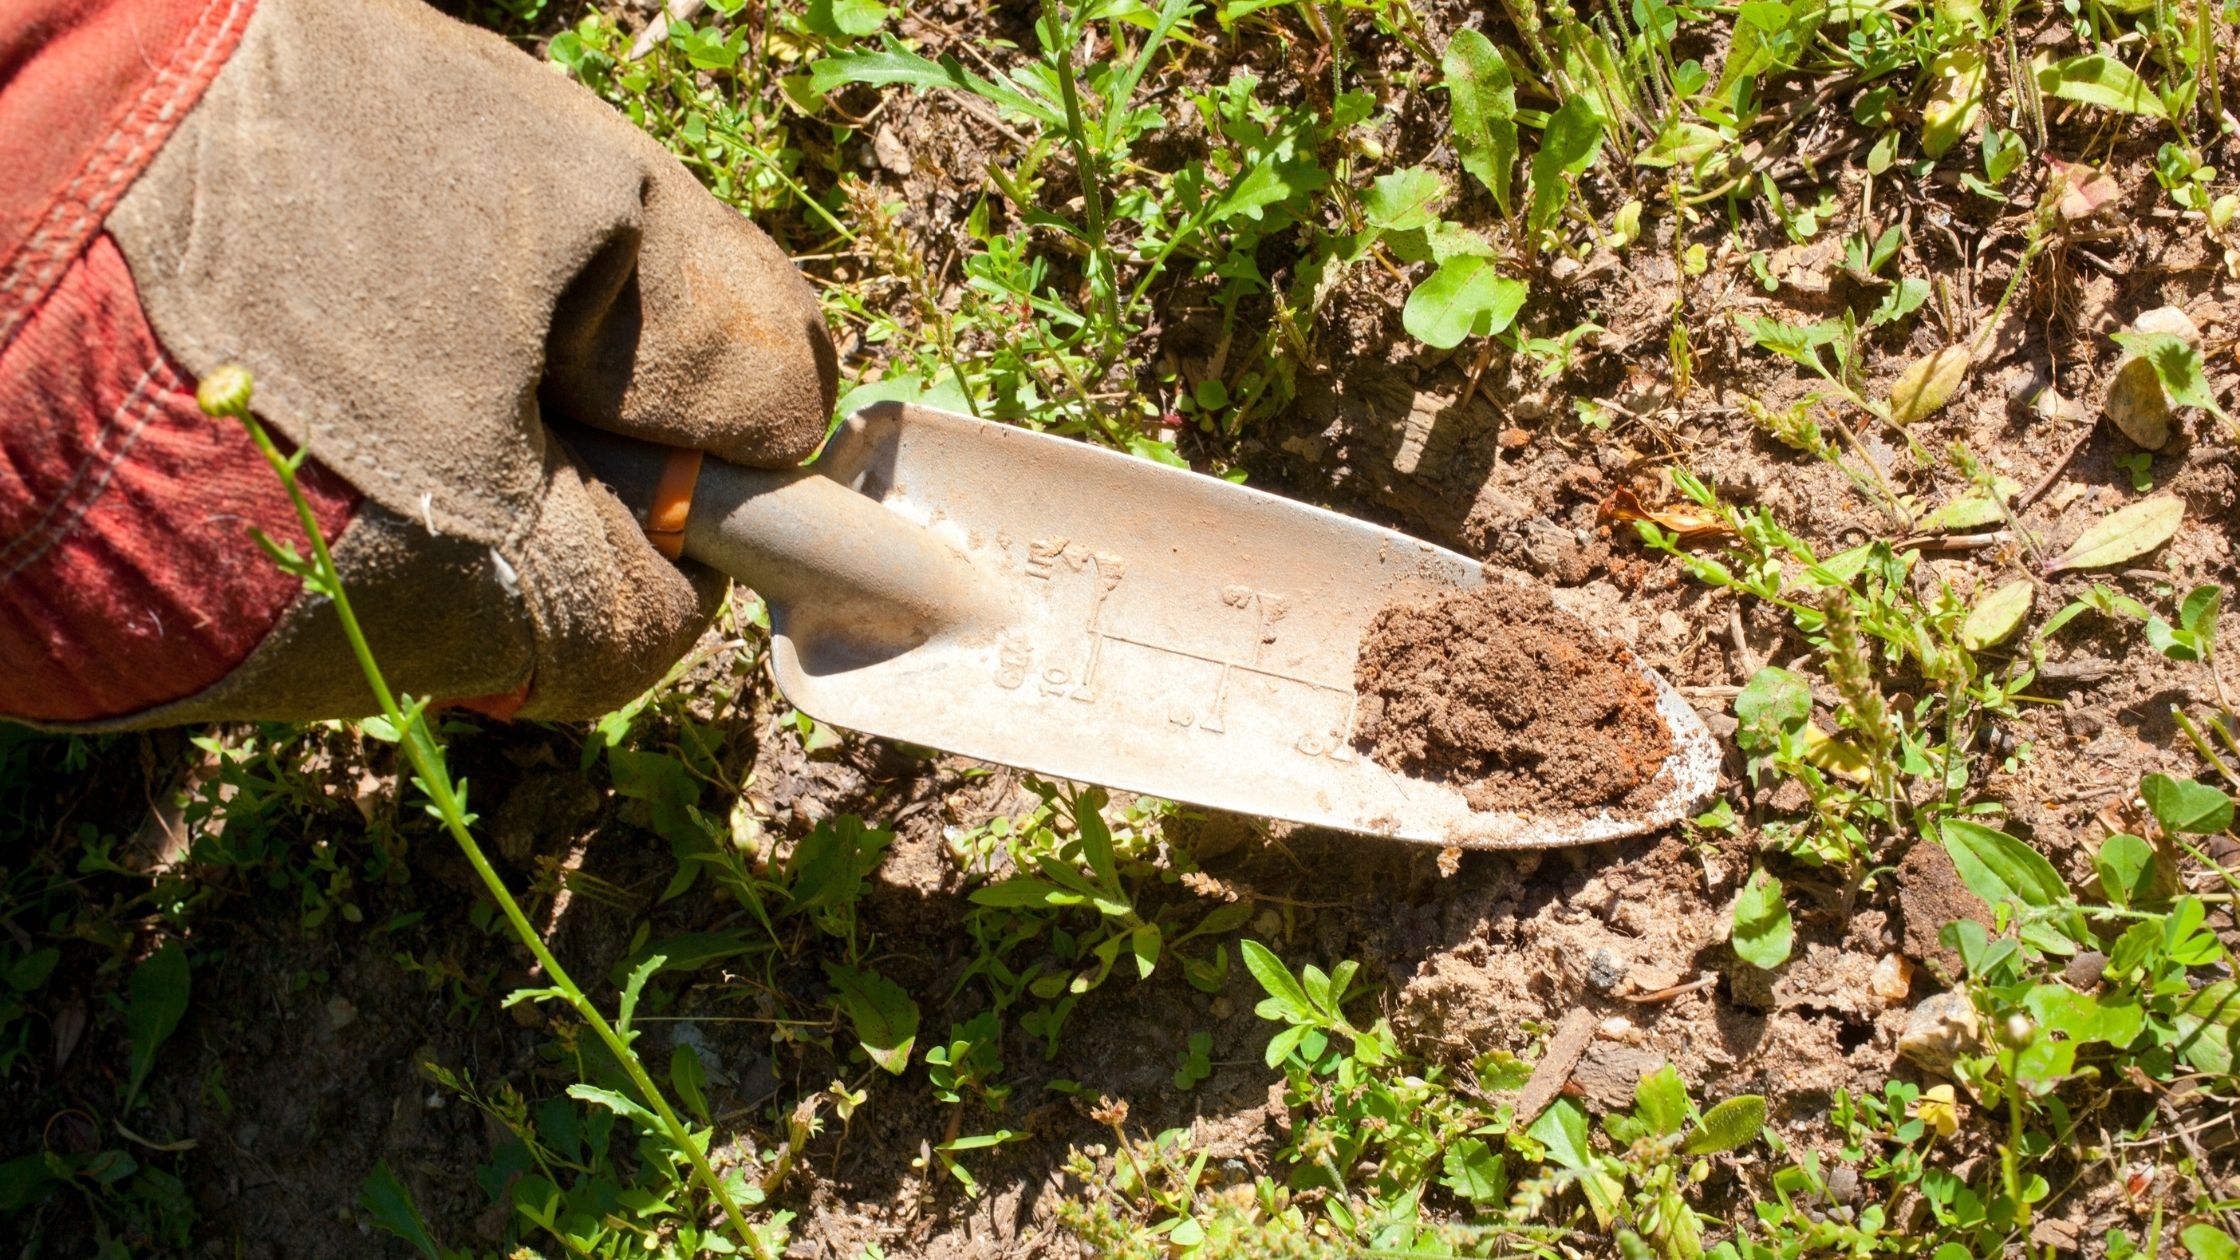 Types of Trowels: planting garden trowel